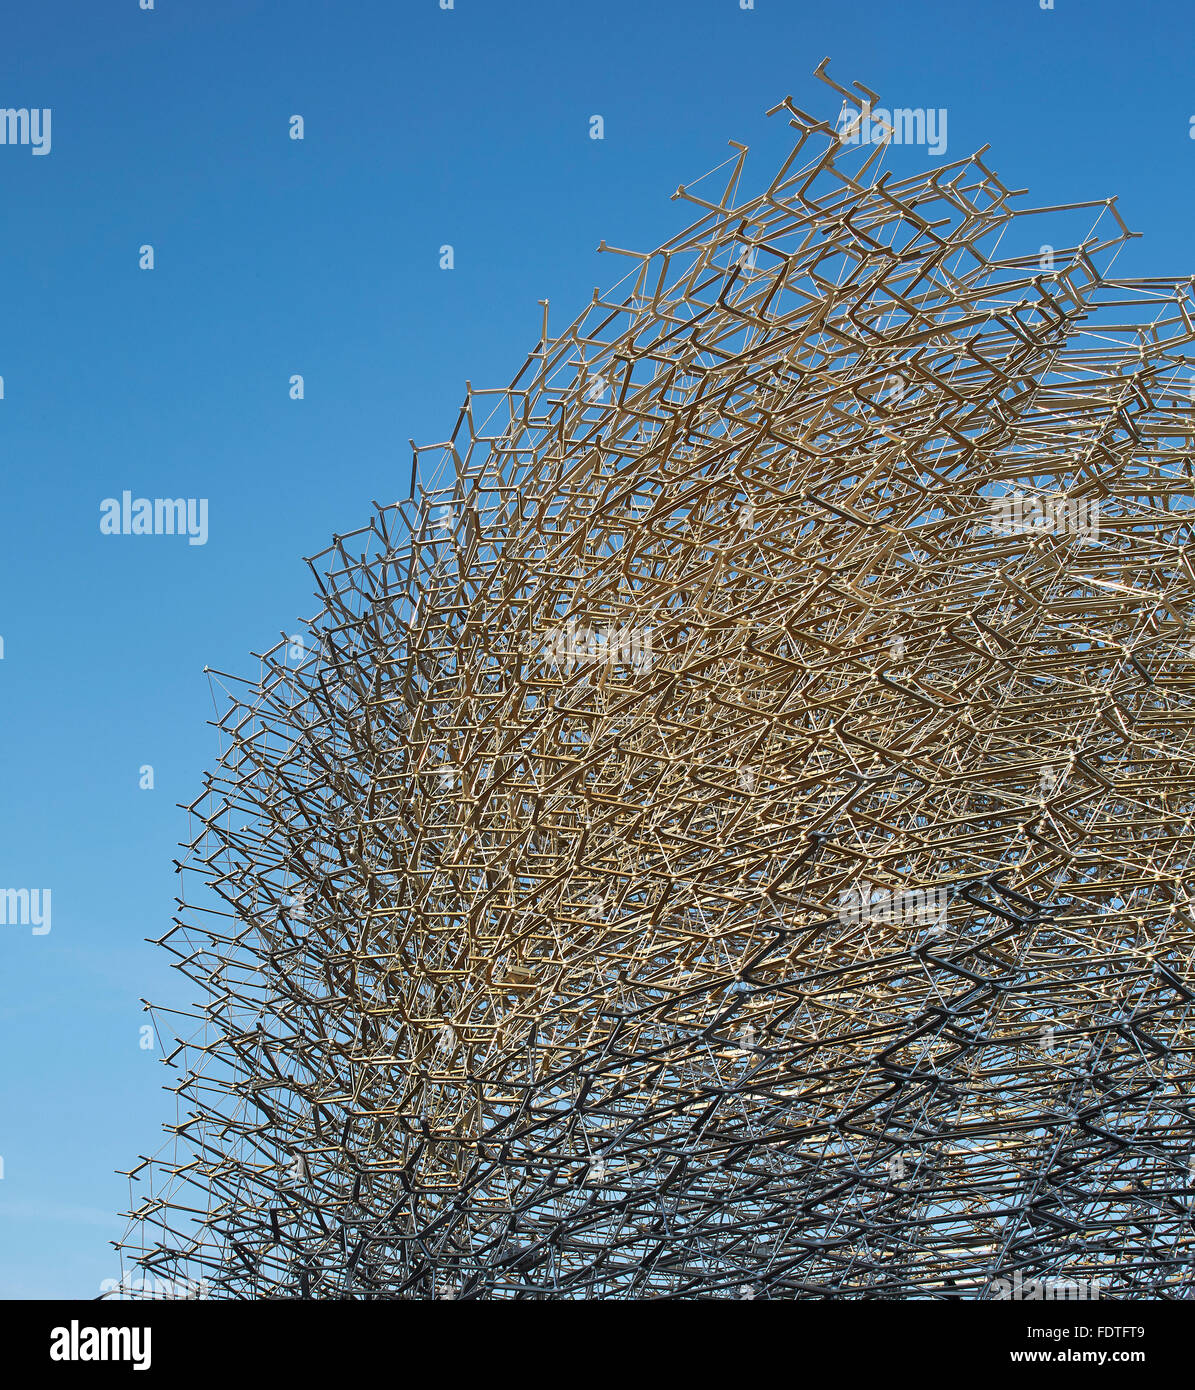 Dettaglio della maglia in alluminio. Milano Expo 2015, UK Pavilion, Milano, Italia. Architetto: Wolfgang contrafforte, 2015. Foto Stock